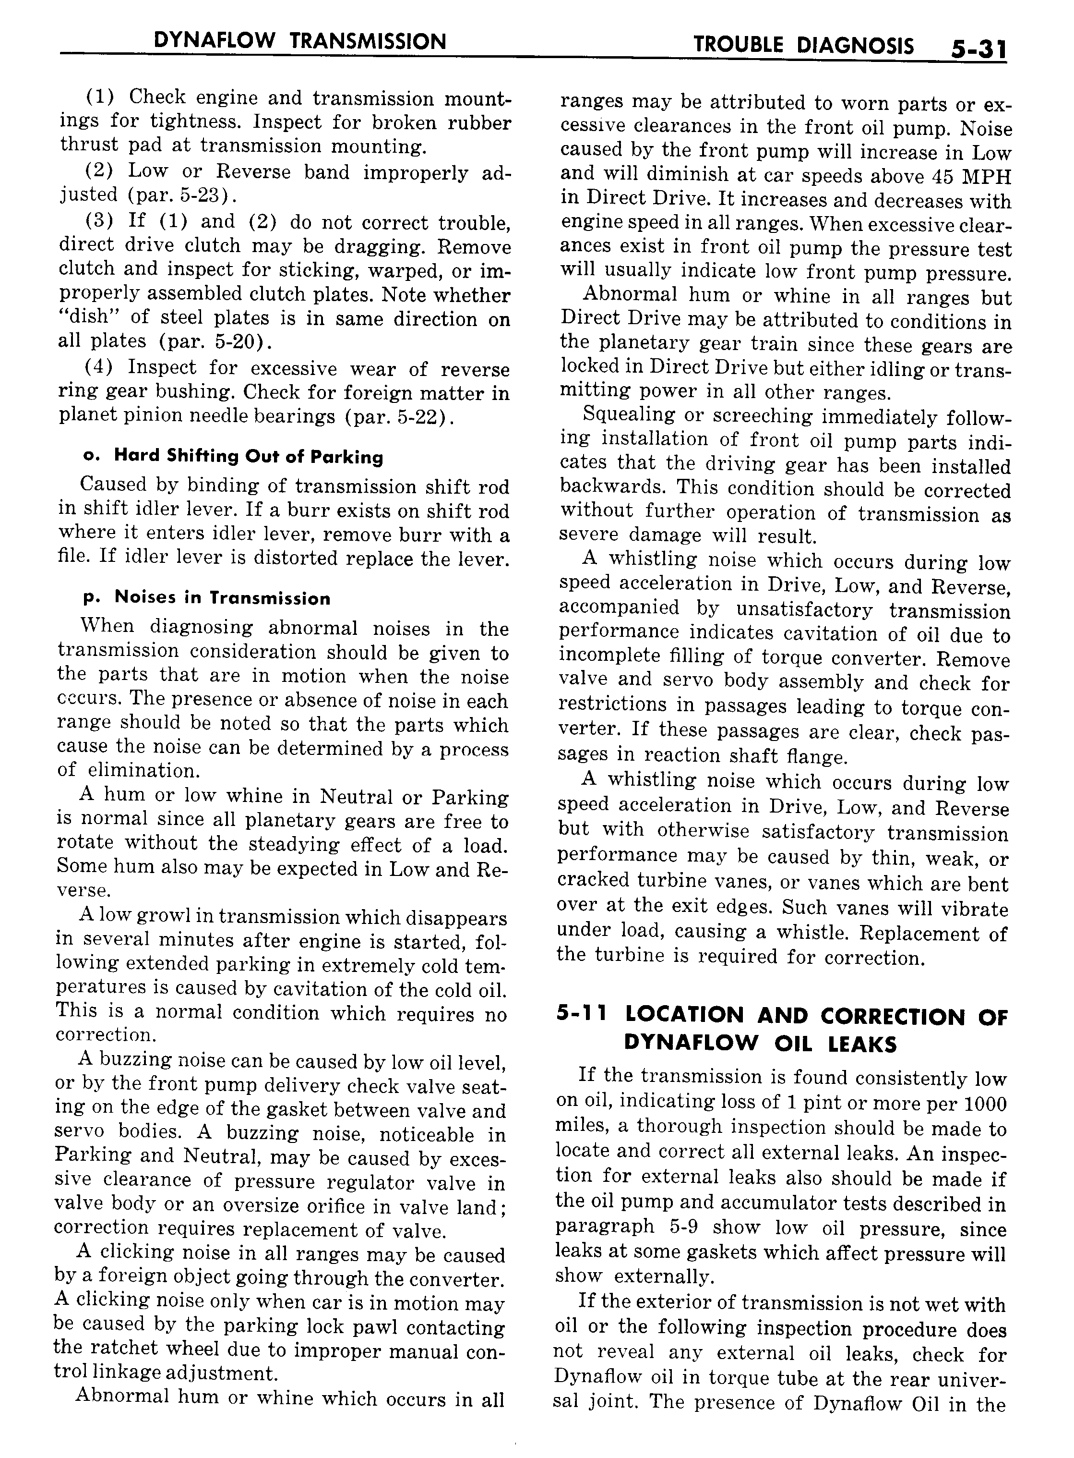 n_06 1957 Buick Shop Manual - Dynaflow-031-031.jpg